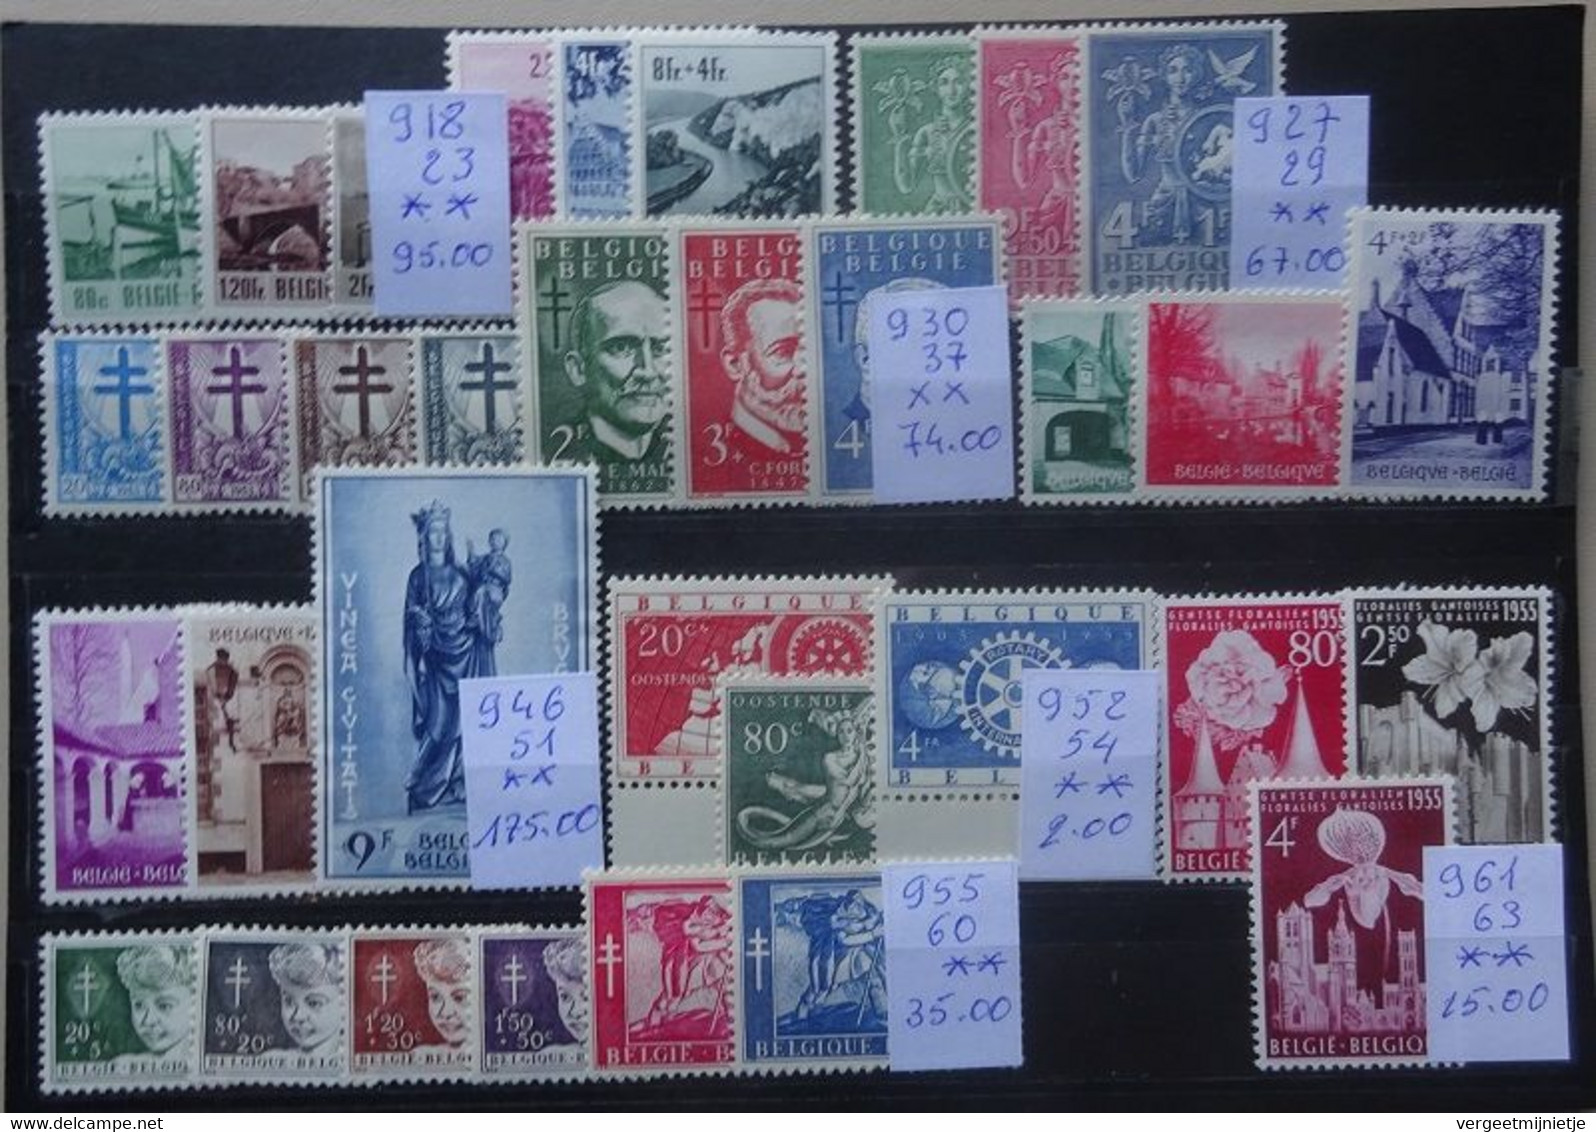 BELGIE  Mooie Samenstelling   1953-54   Nr. 918-23 / 927-929 / 930-937 / 946-951 / 952-954 En  955-960  **  CW 473,00 - Unused Stamps